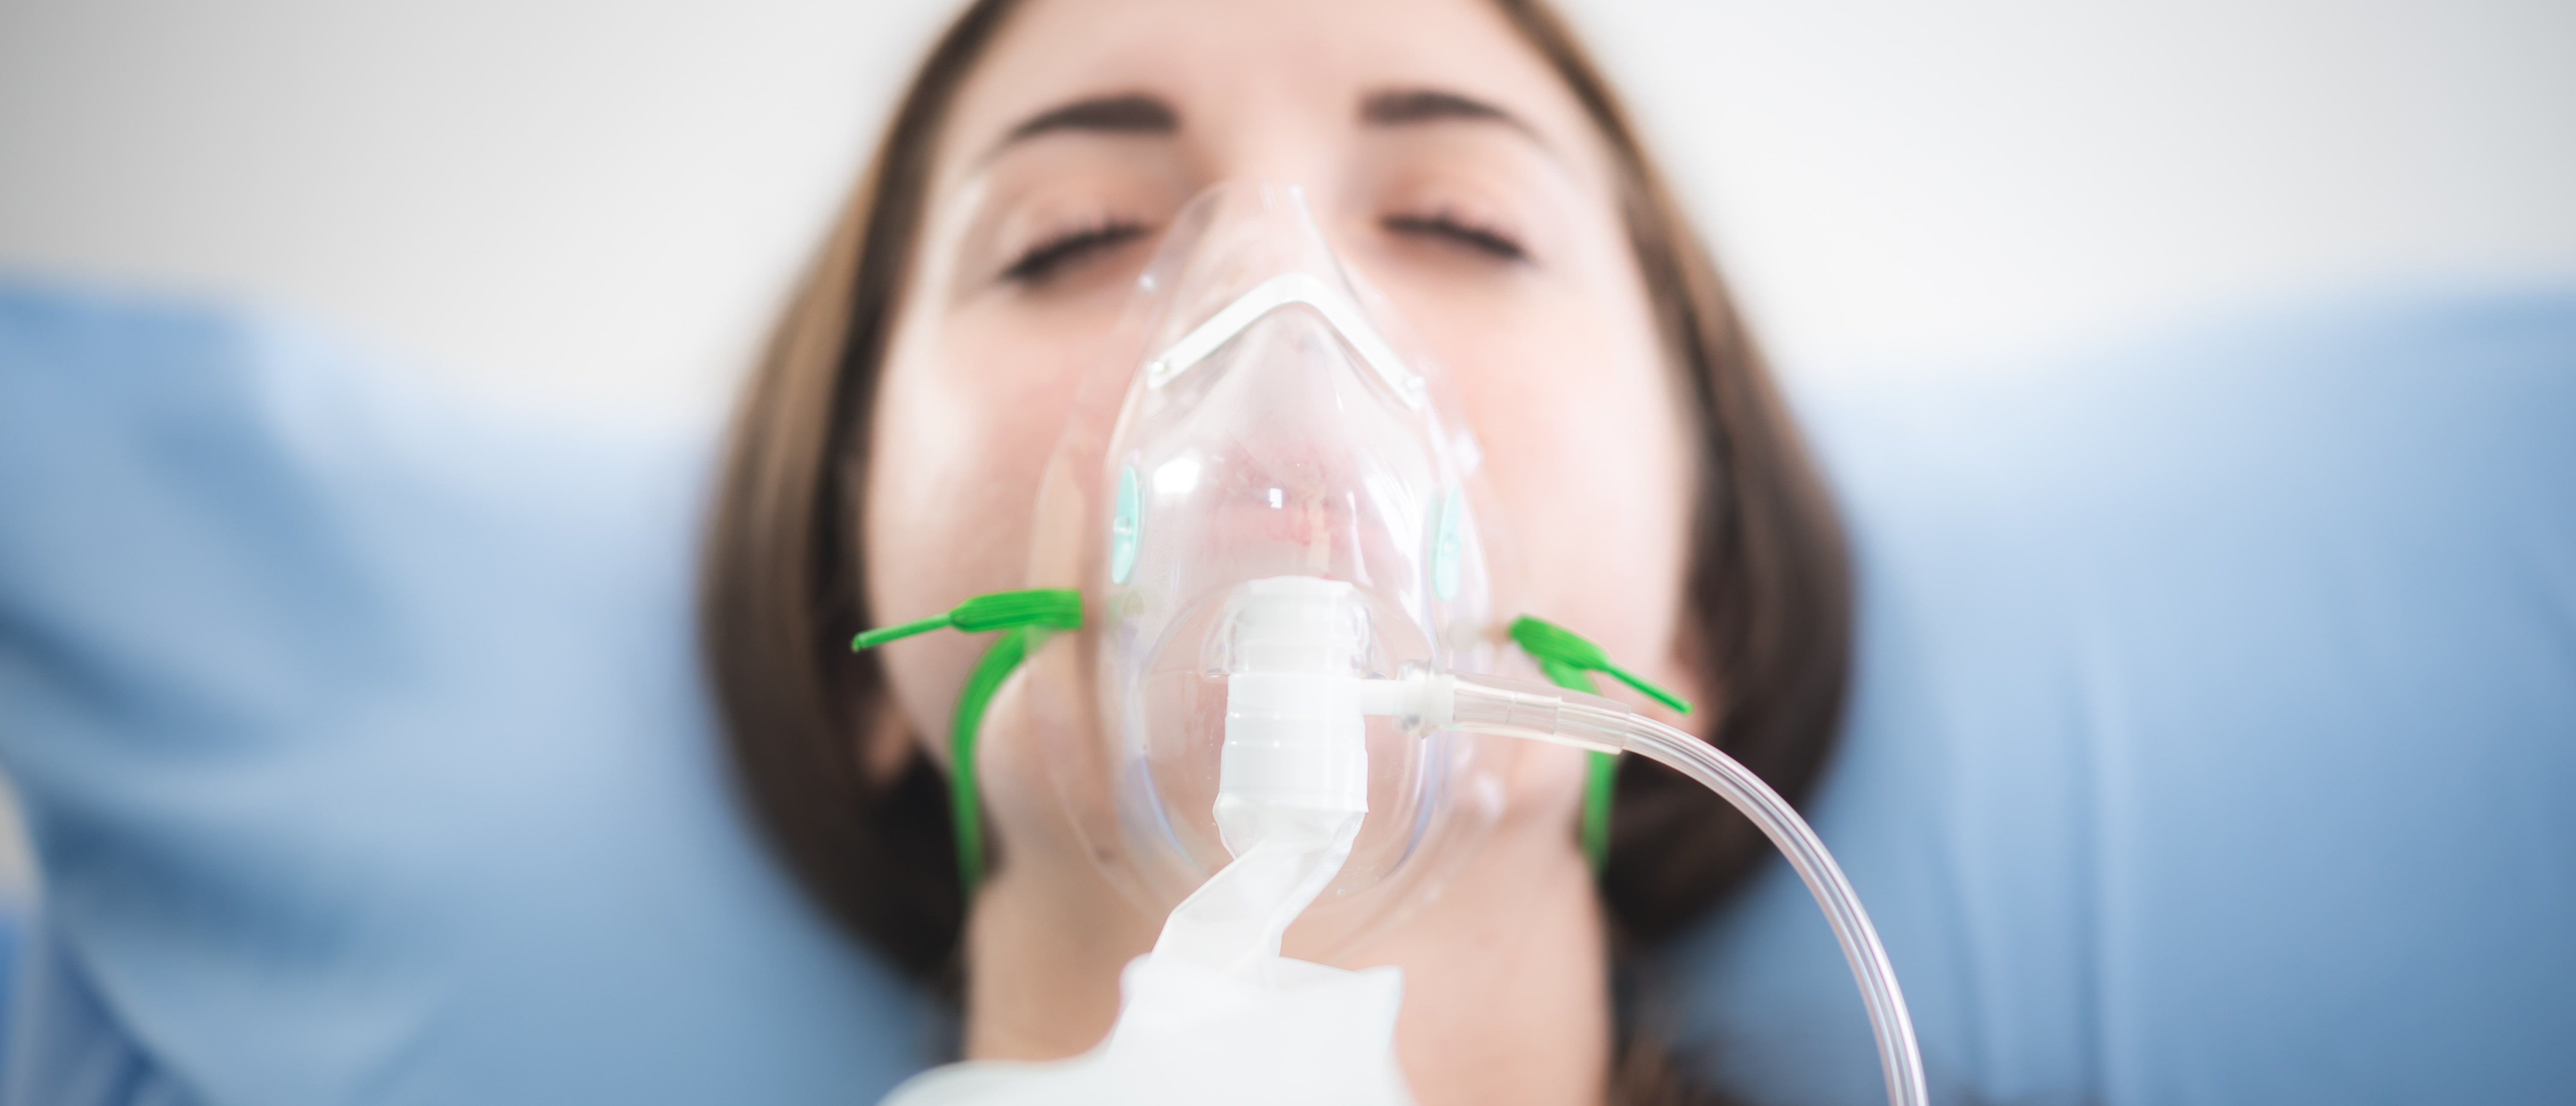 L'oxygénothérapie est un soin par apport d'oxygène. © Chokniti, Adobe Stock